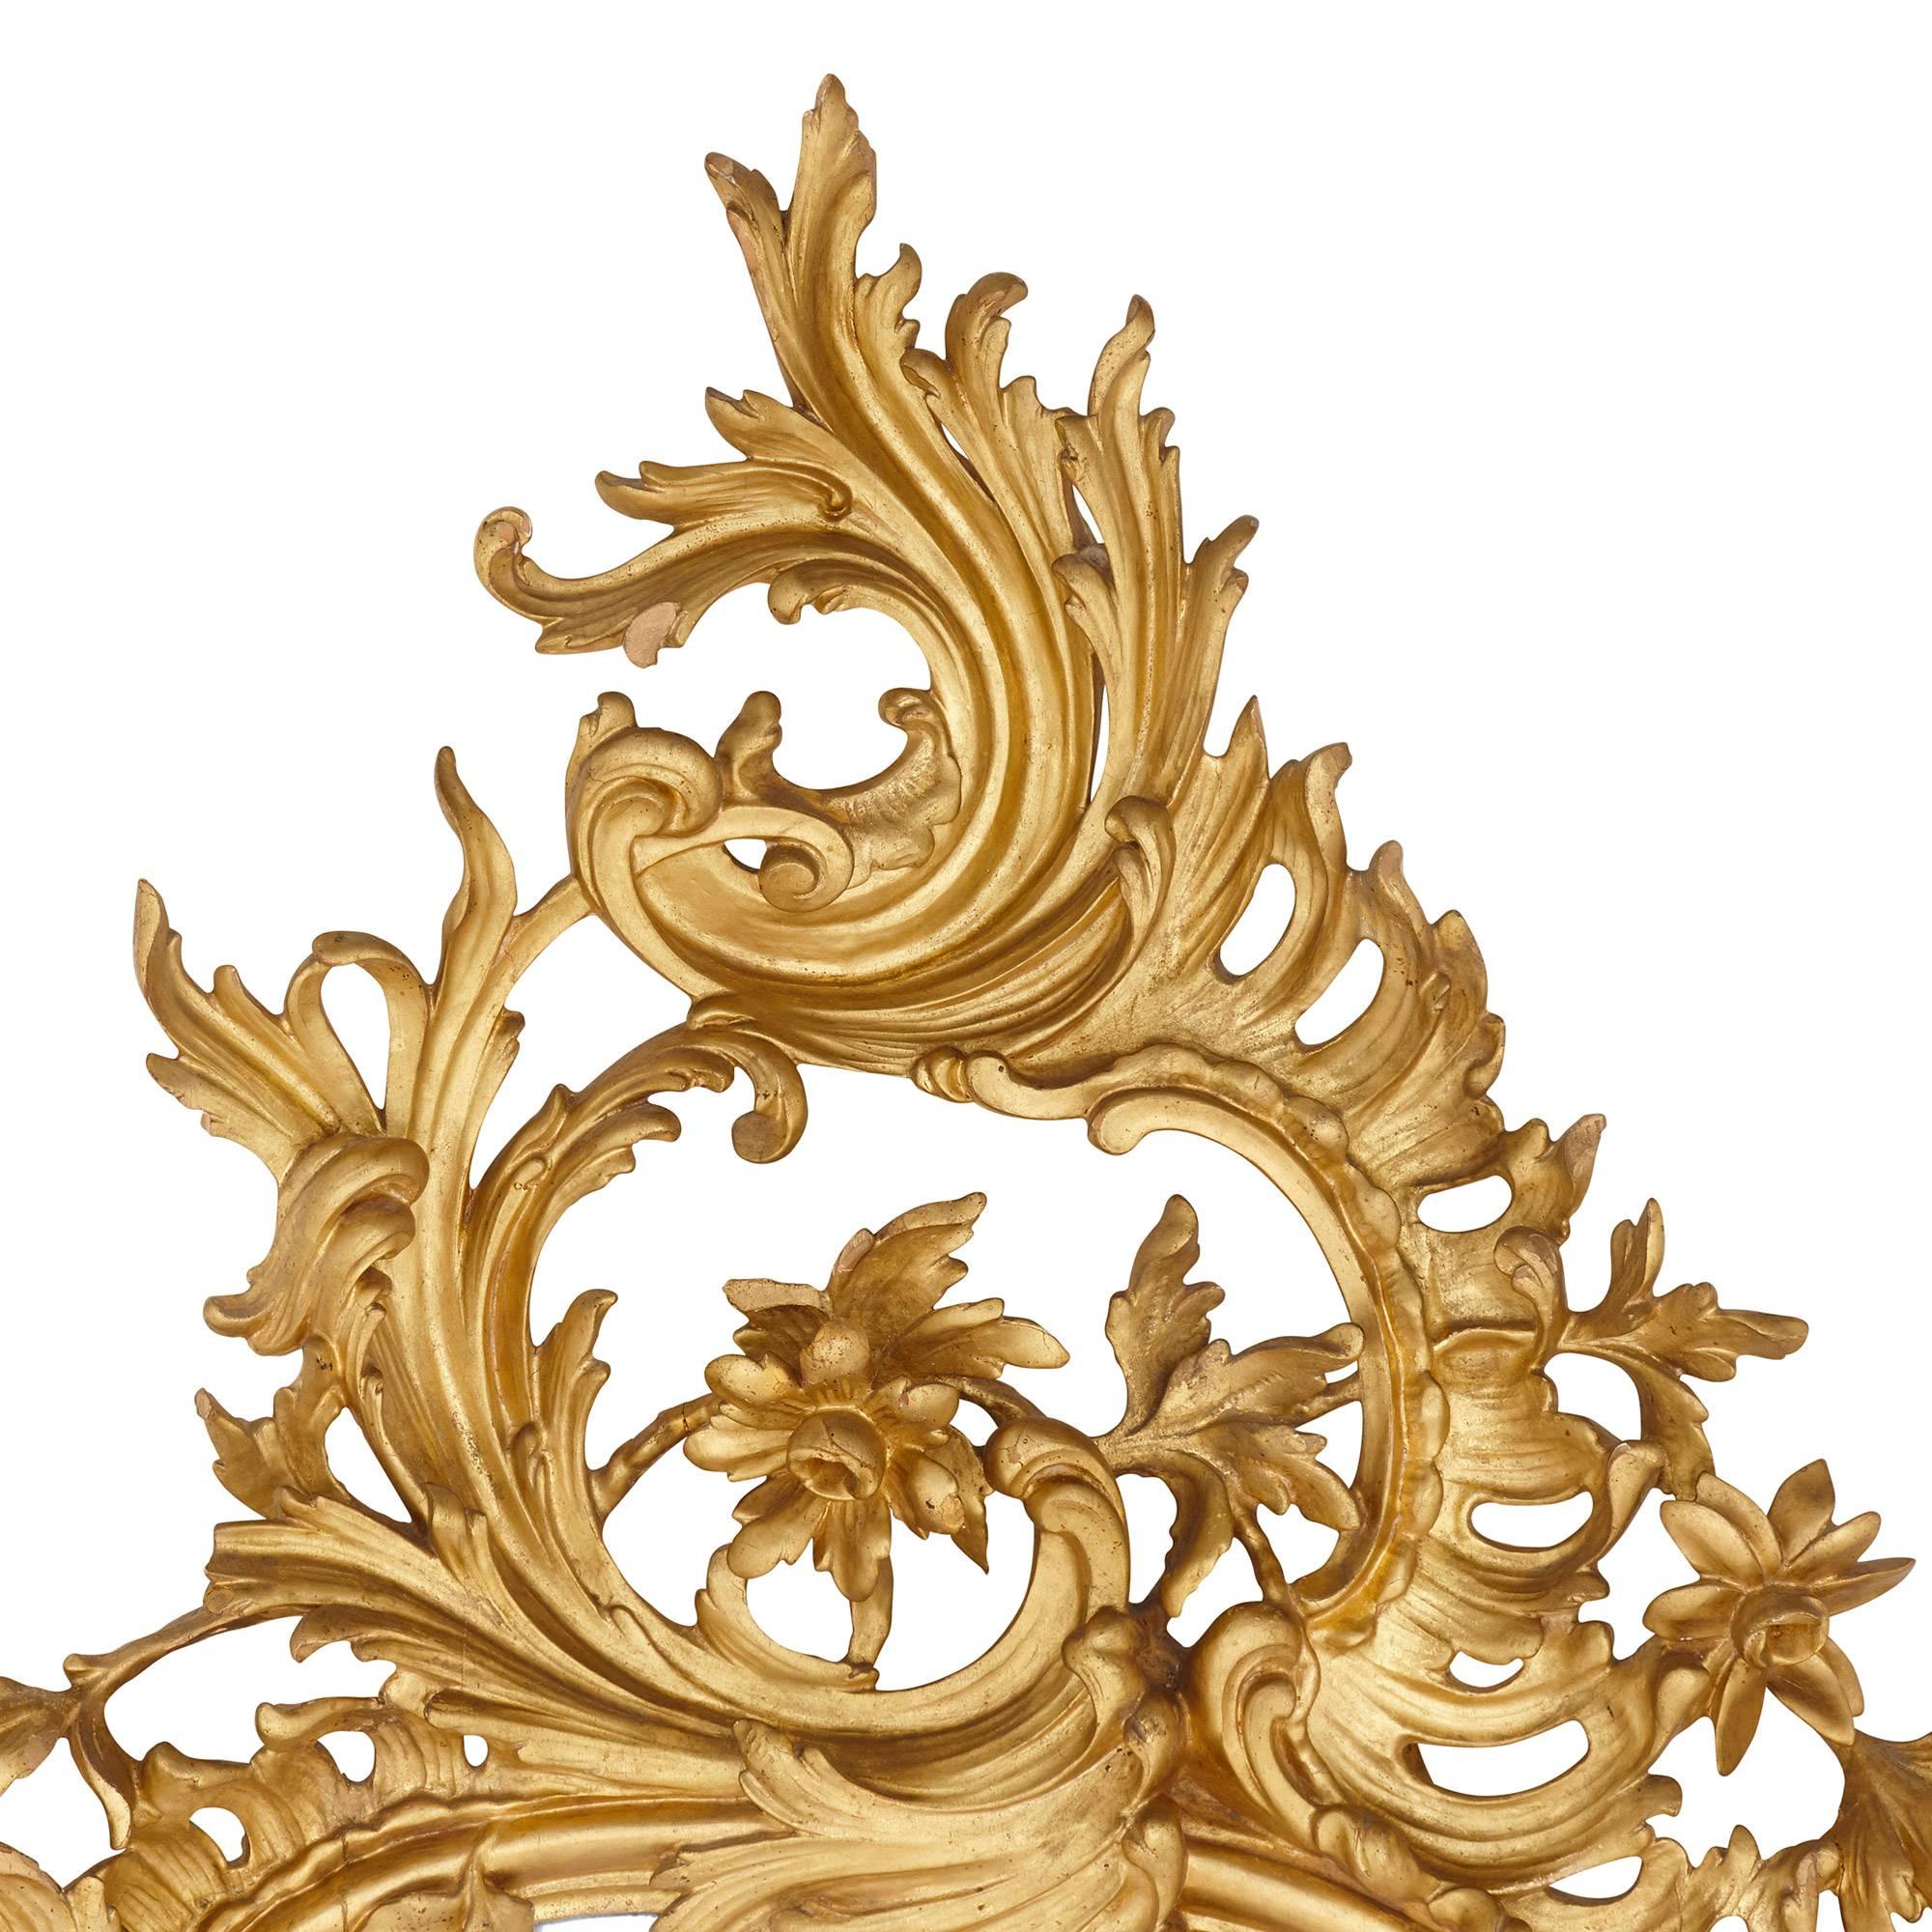 Cet exceptionnel miroir ancien de style rococo est sculpté dans du bois doré. Le style rococo a été relancé au XIXe siècle et ce miroir en présente les principales caractéristiques dans son cadre orné, qui a été magistralement façonné en motifs